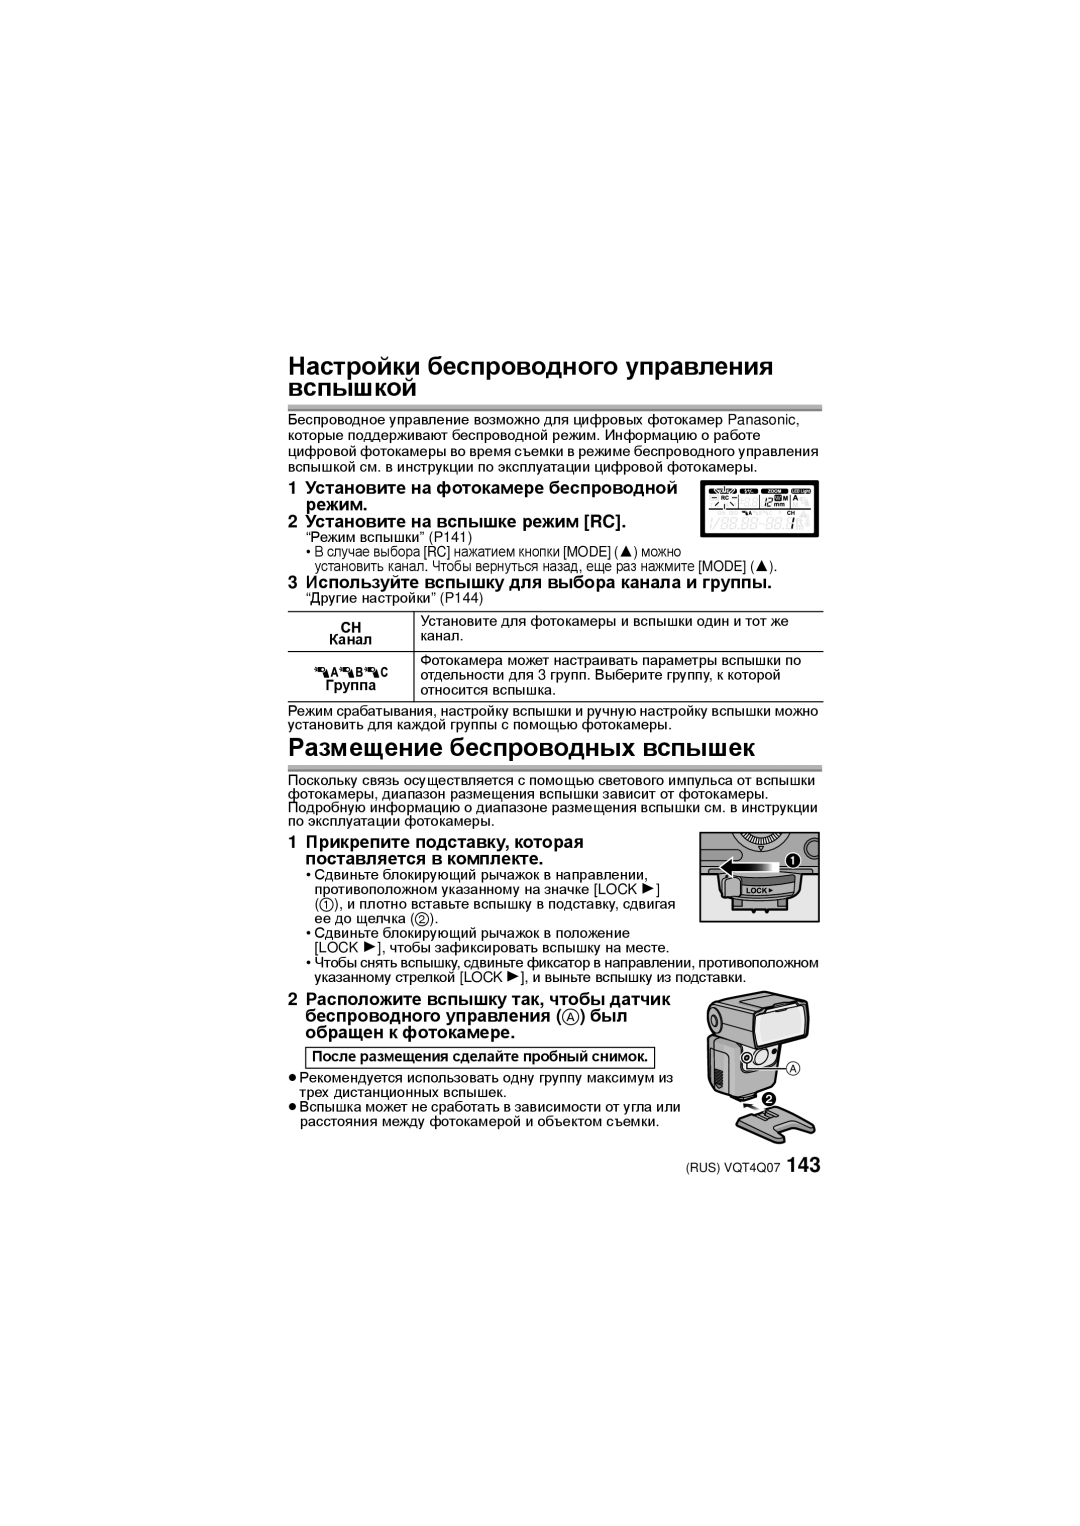 Panasonic DMW-FL360L operating instructions Настройки беспроводного управления вспышкой, Размещение беспроводных вспышек 